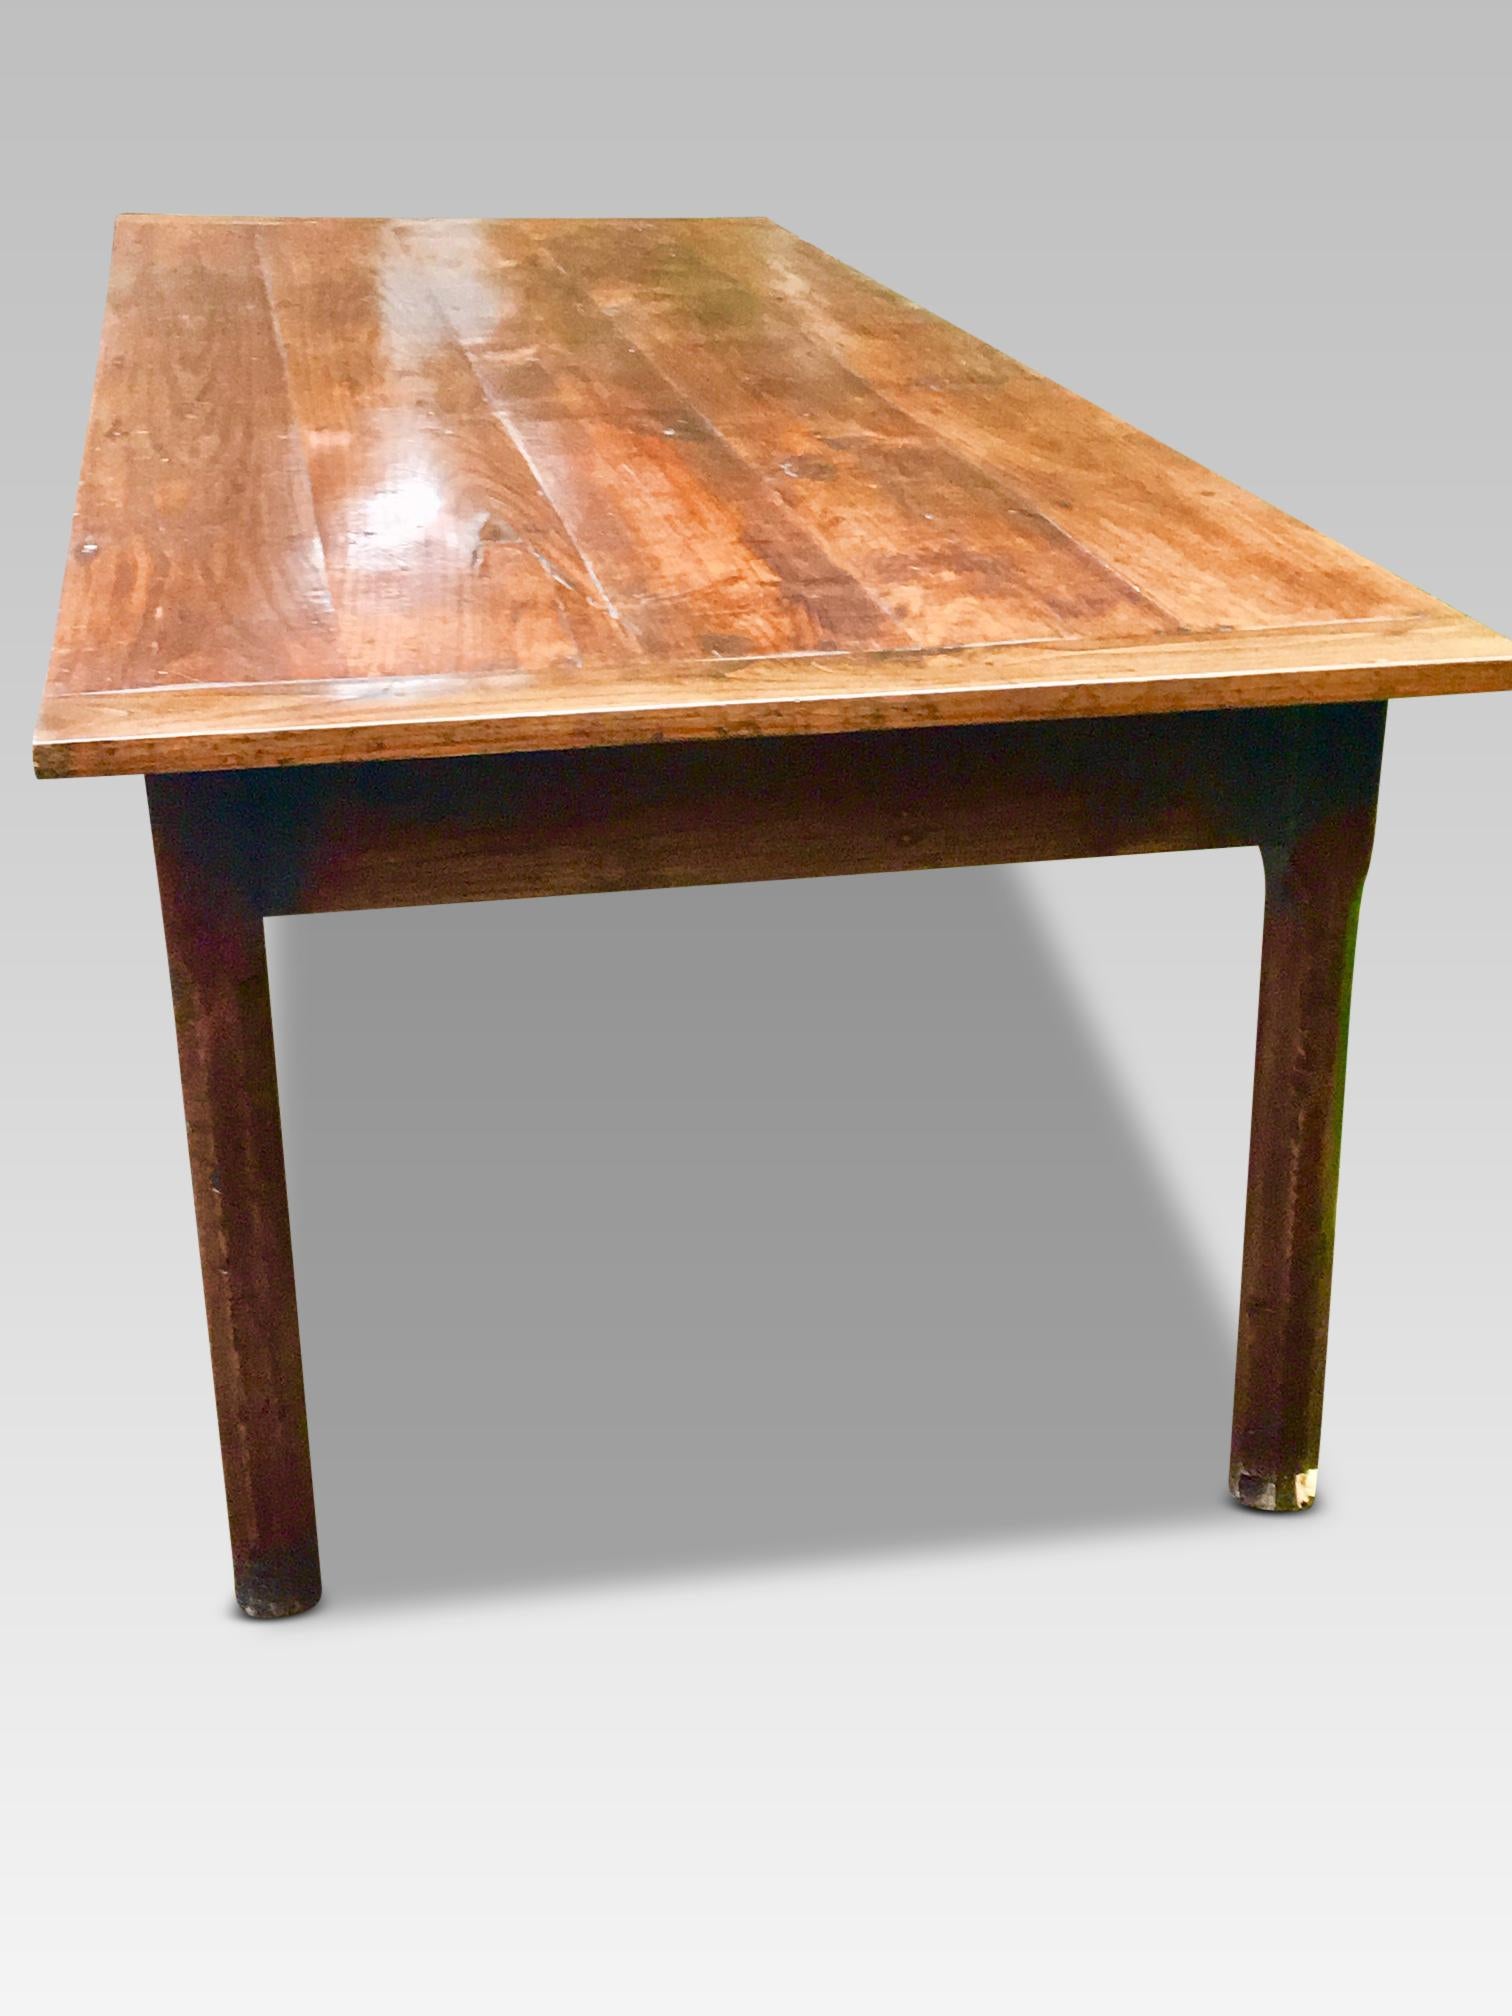 19th Century Chestnut Farmhouse Table, 2.95 mtrs